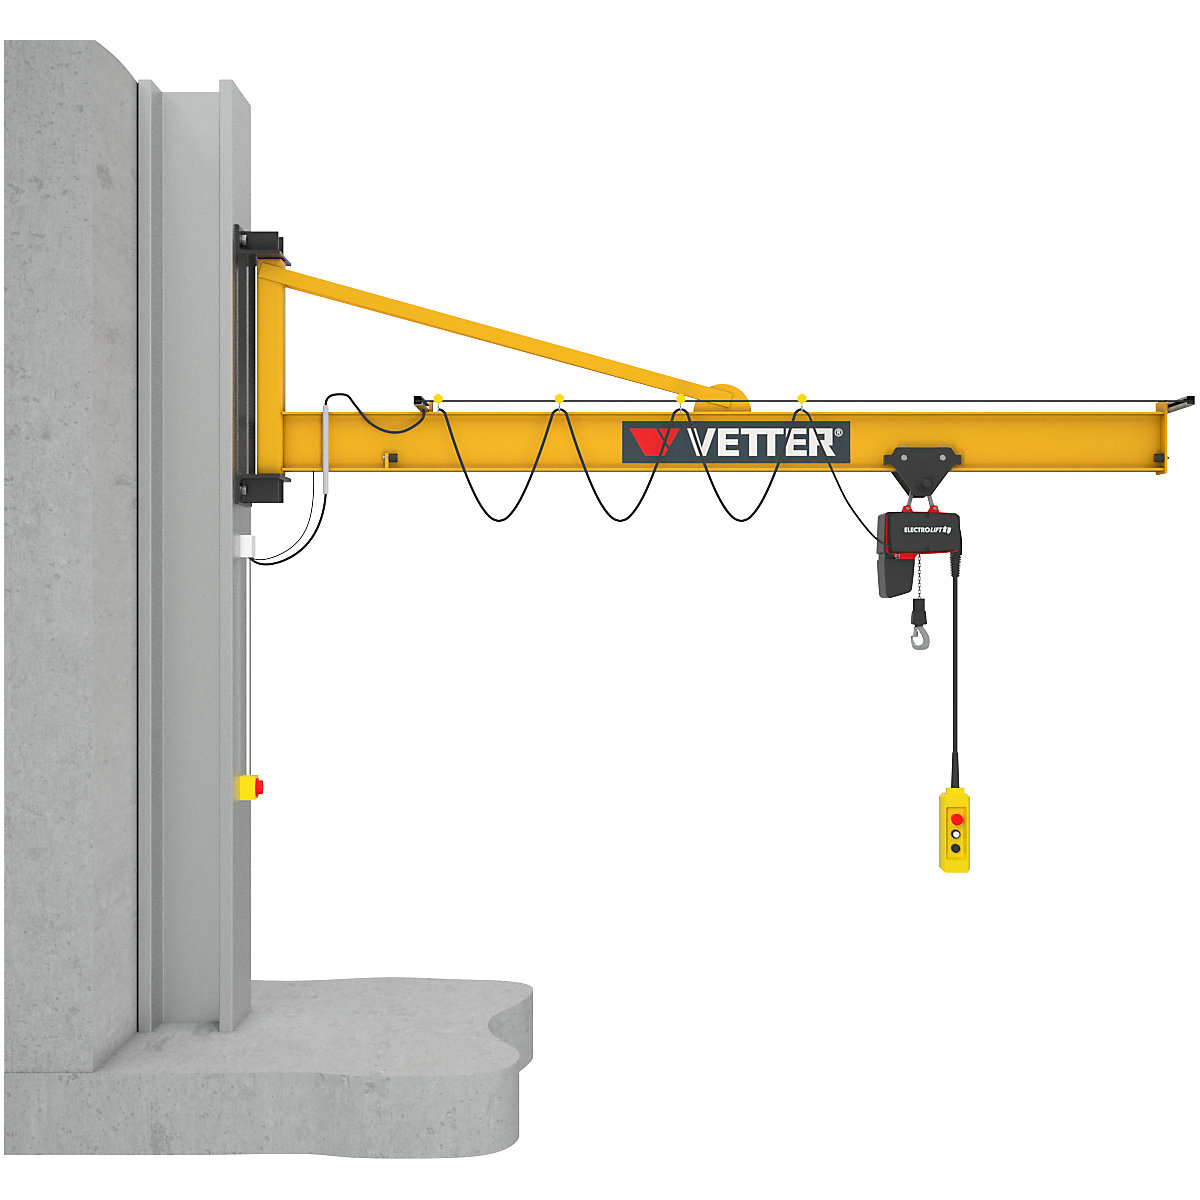 PRAKTIKUS PW wall mounted jib crane - Vetter